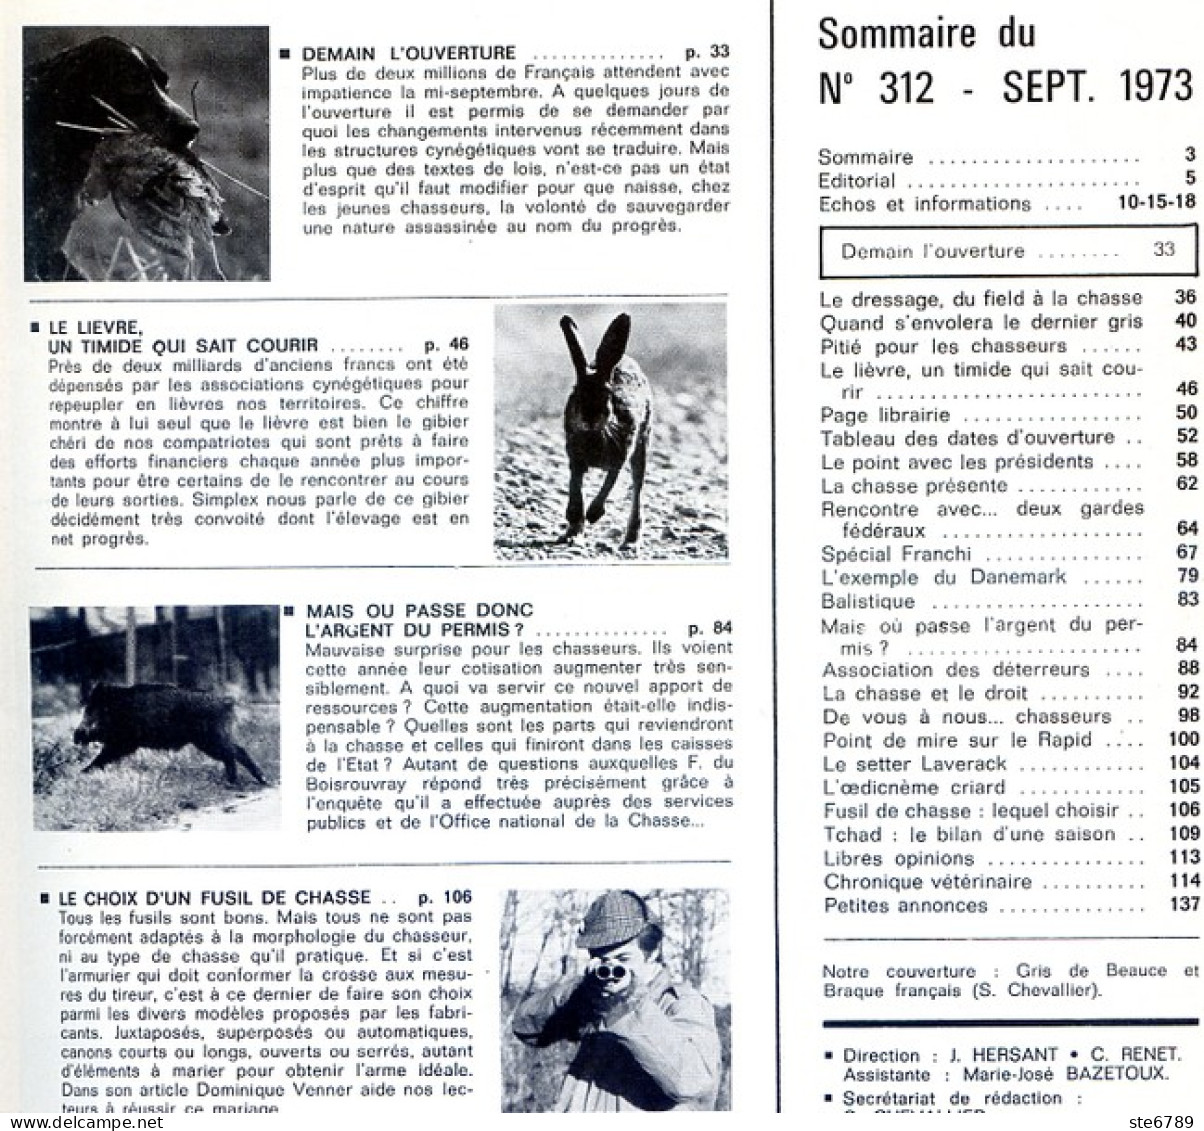 La Revue Nationale De LA CHASSE N° 312 Septembre 1973 Le Lievre , Choix Fusil De Chasse - Caza & Pezca